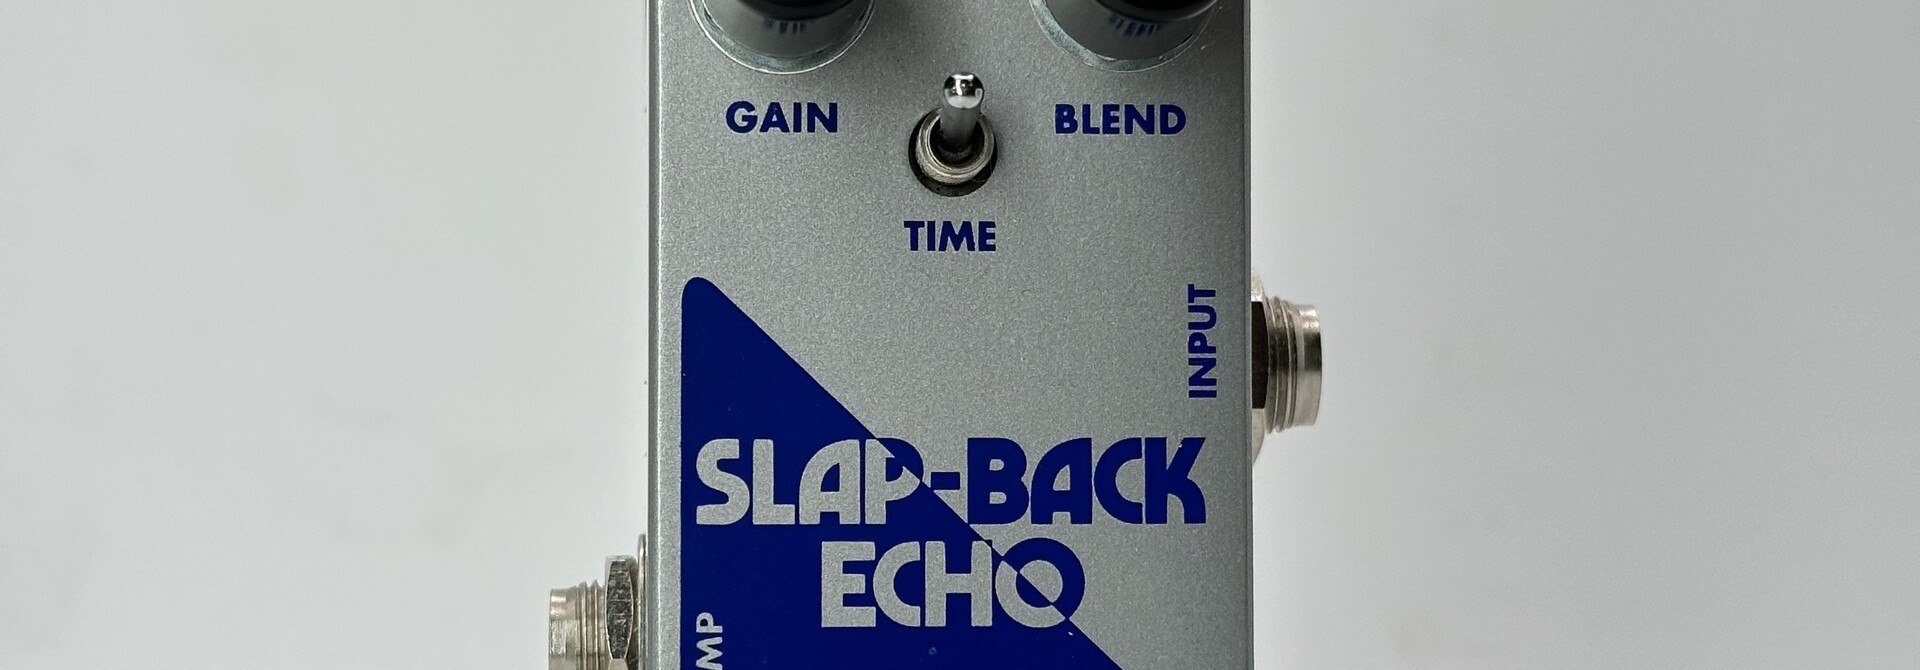 EHX Slap-Back Echo Analog Delay Reissue